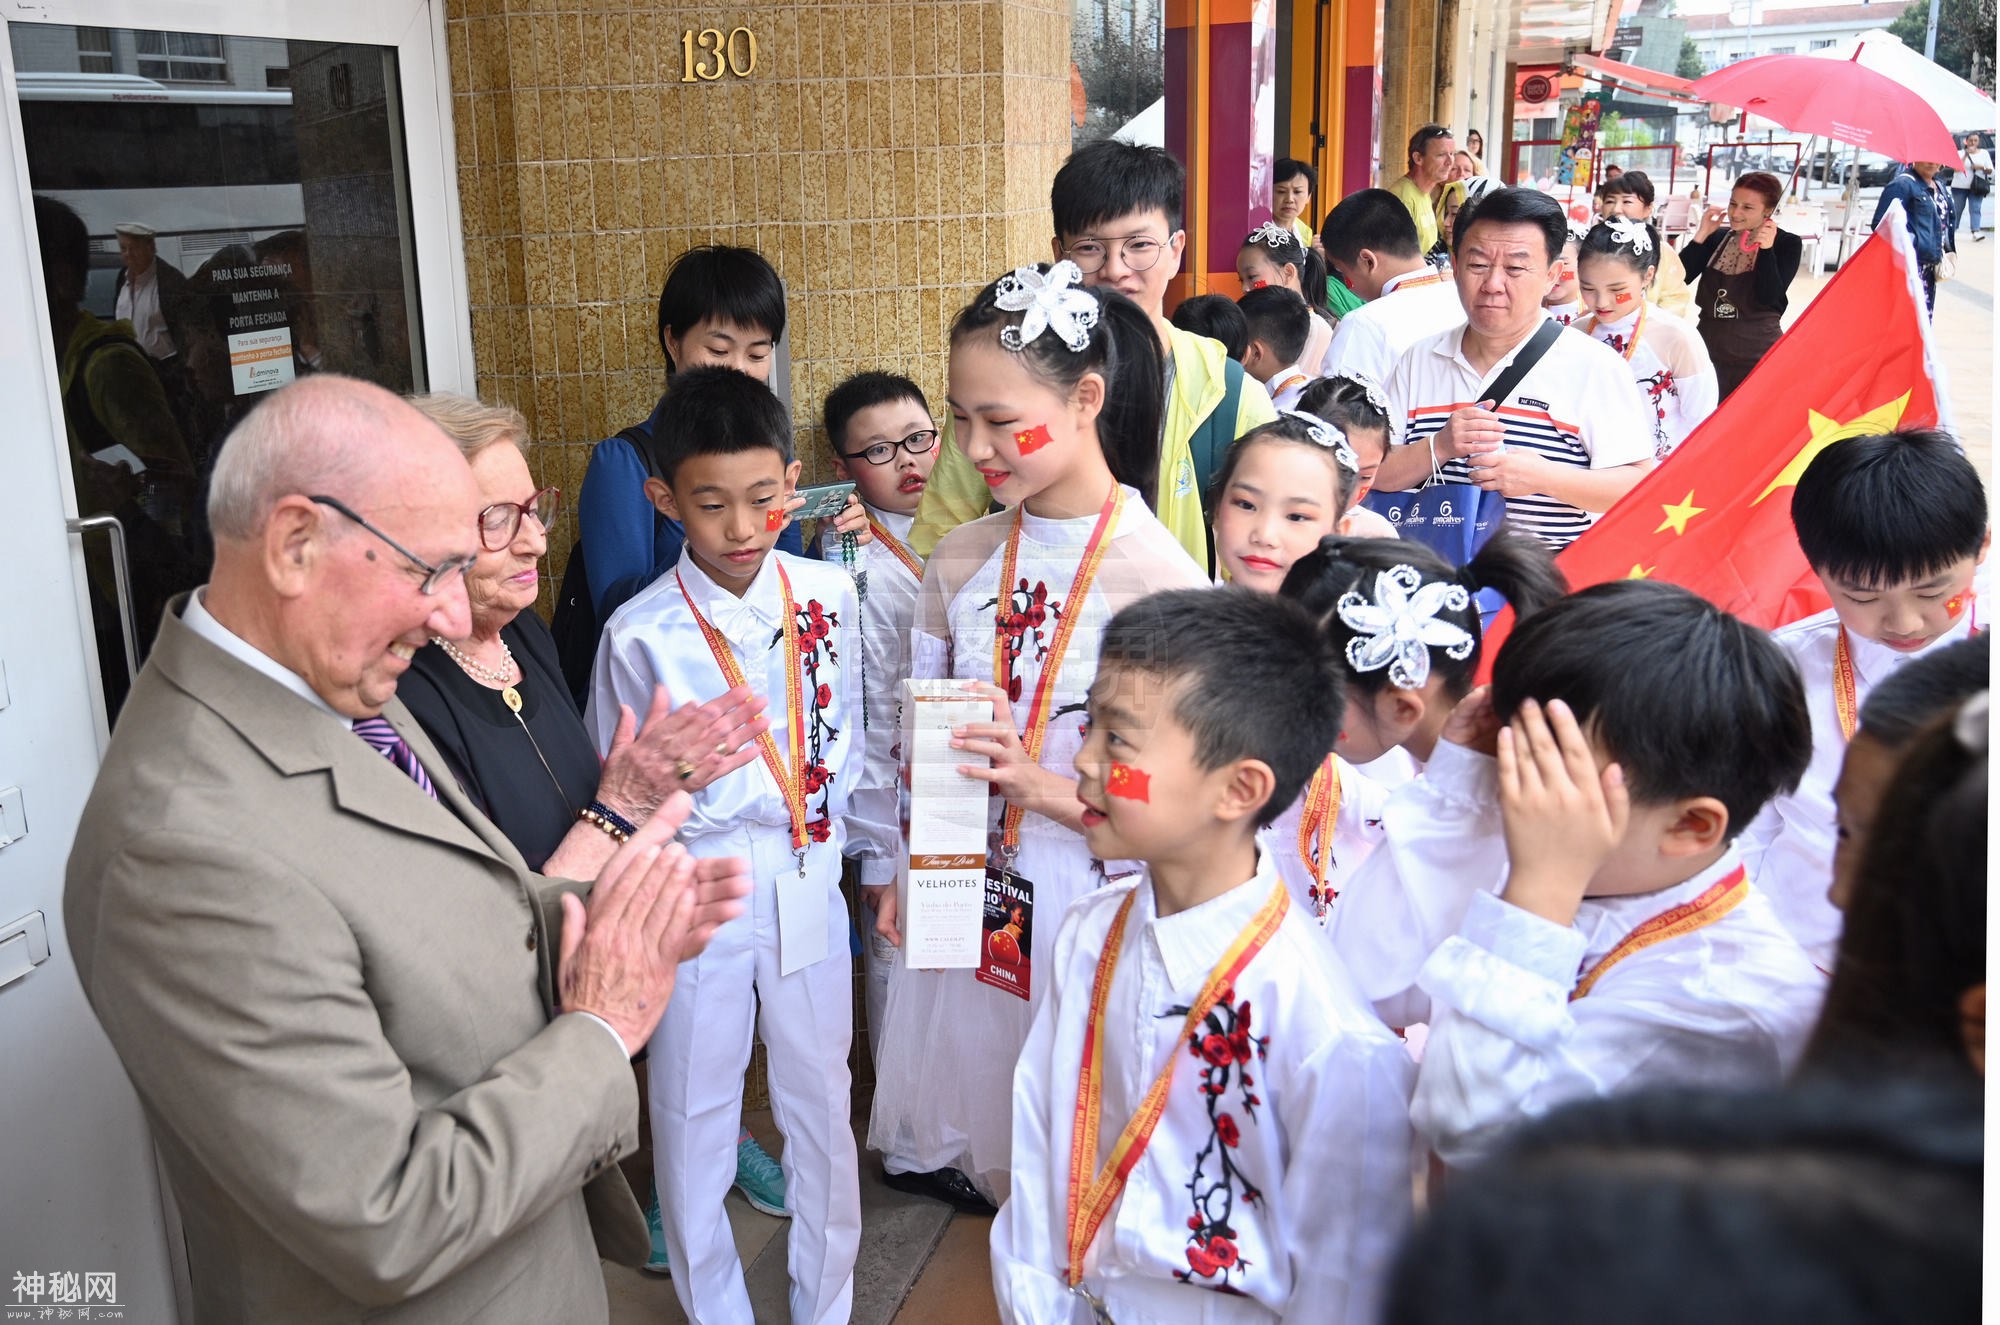 巴塞罗斯国际民俗节 中国民乐首次亮相 杭州这群孩子赚足了眼球-6.jpg